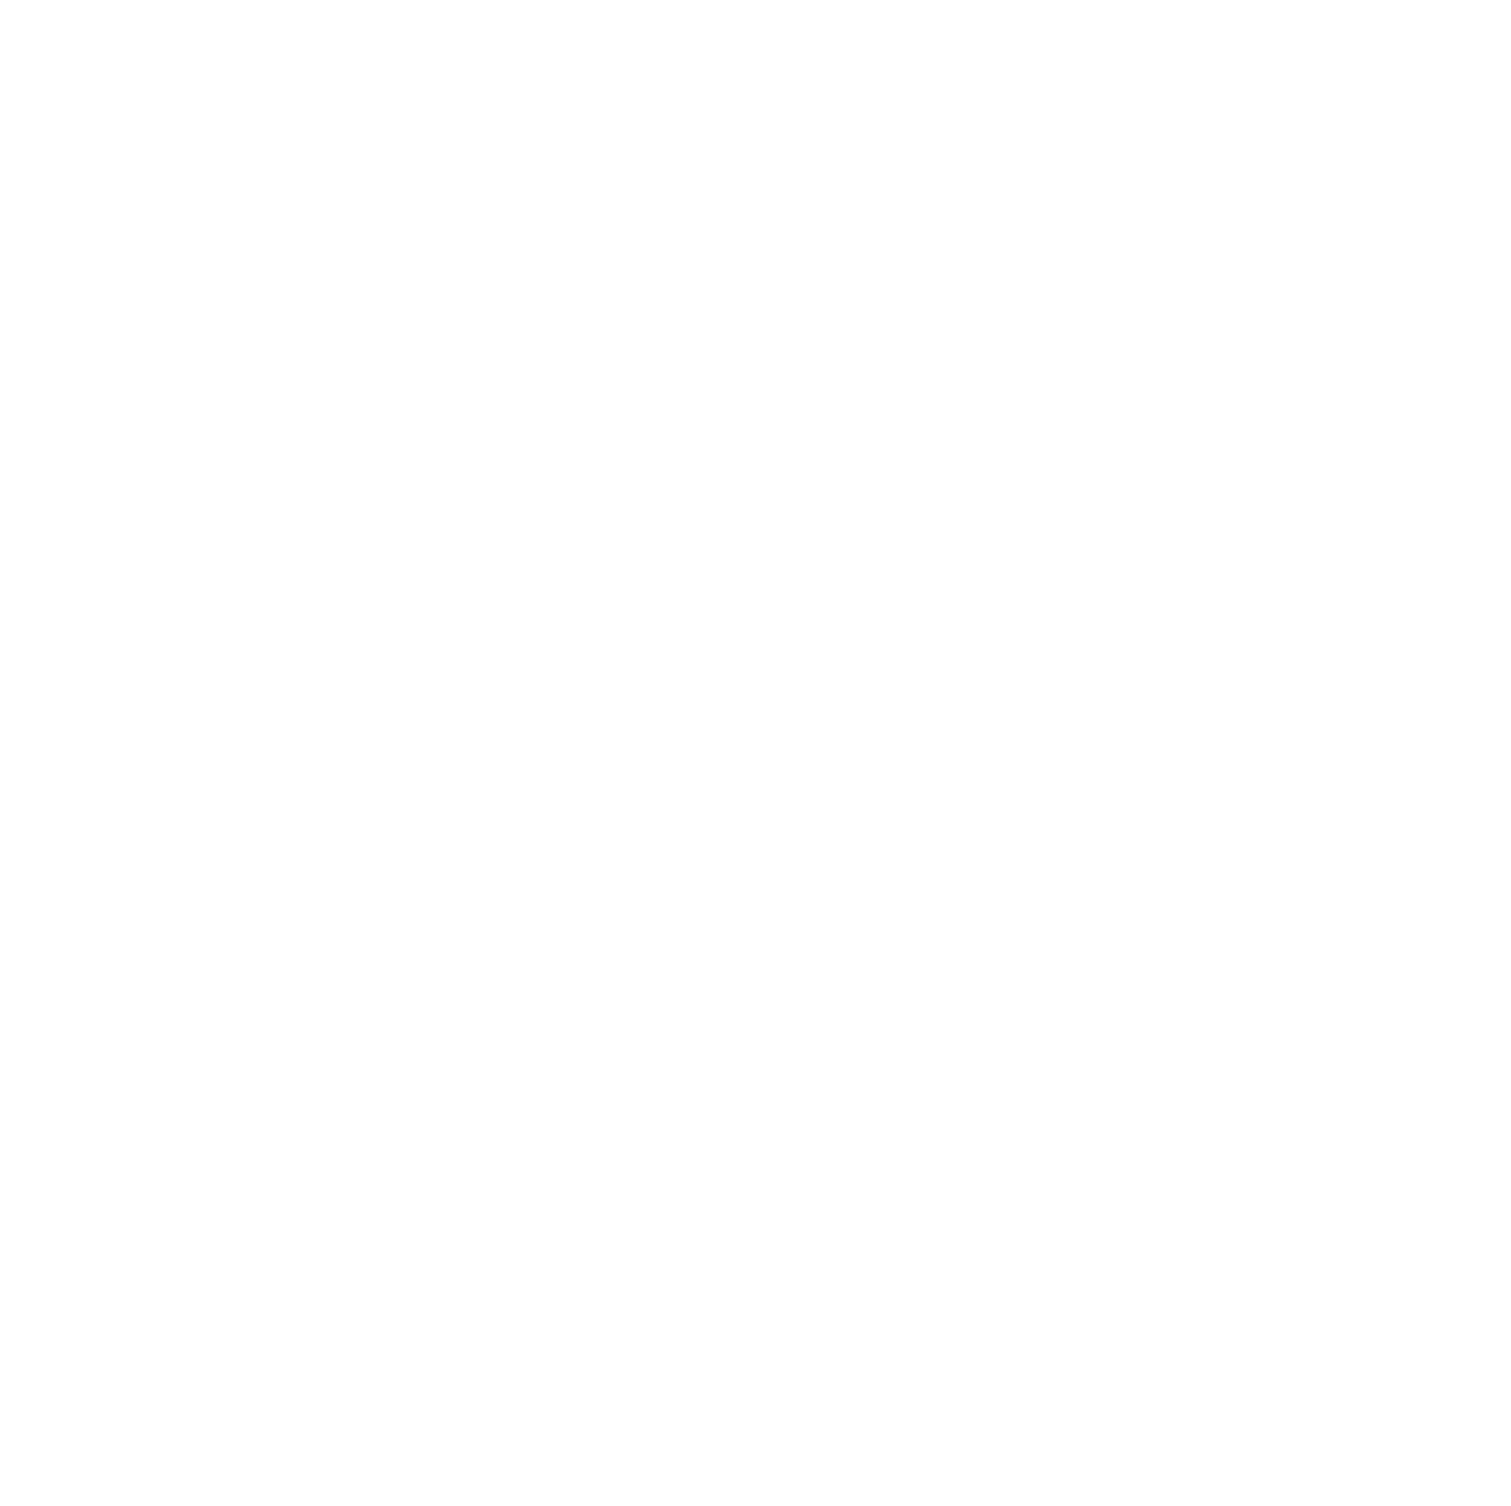 Bâloise logo for dark backgrounds (transparent PNG)